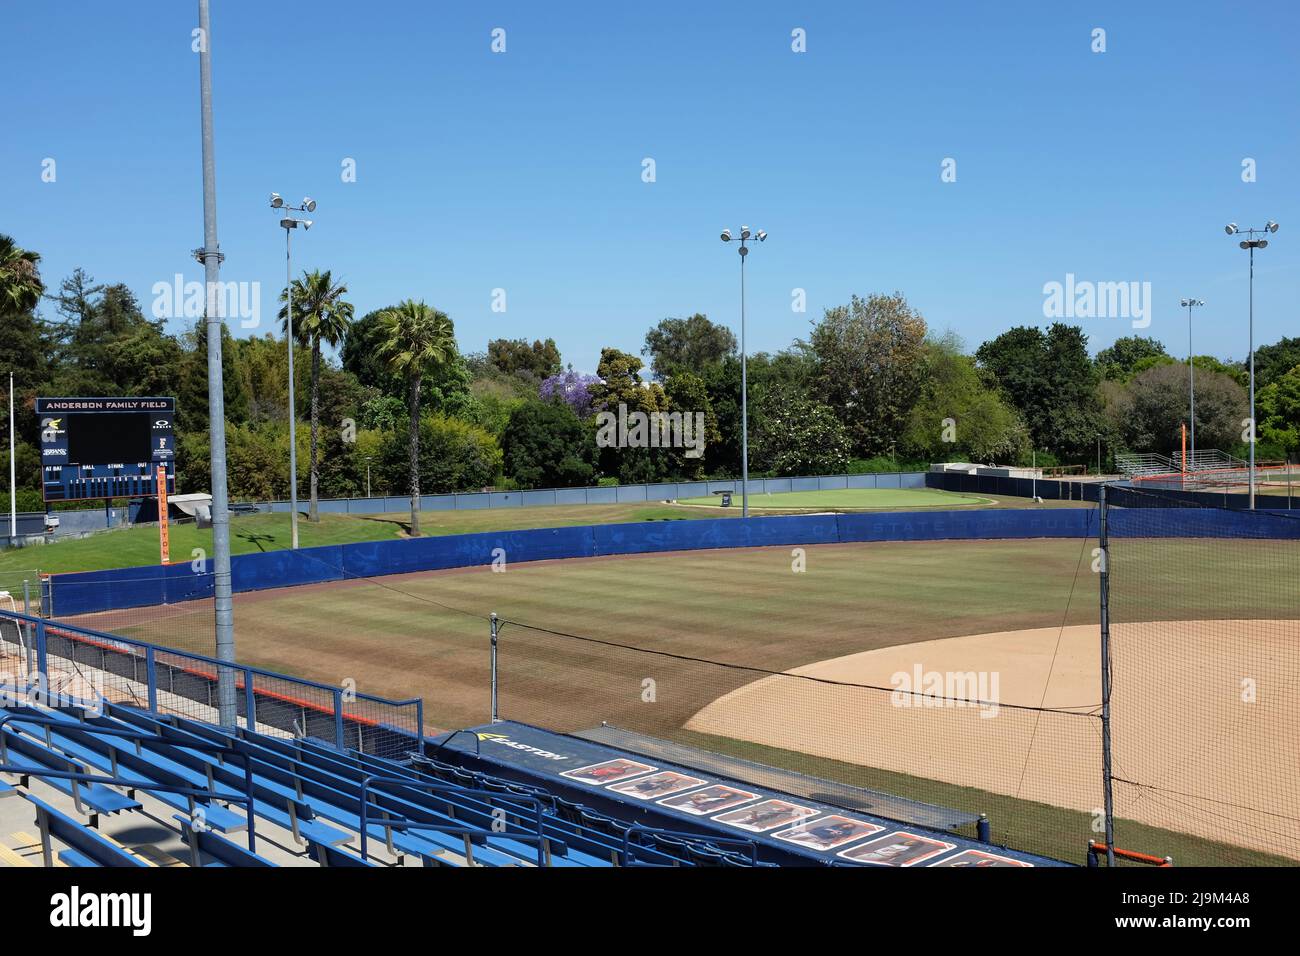 FULLERTON CALIFORNIA - 22 MAI 2020 : le terrain de la famille Anderson, stade de l'équipe de softball féminine Fullerton Titans de l'Université d'État de Californie. Banque D'Images